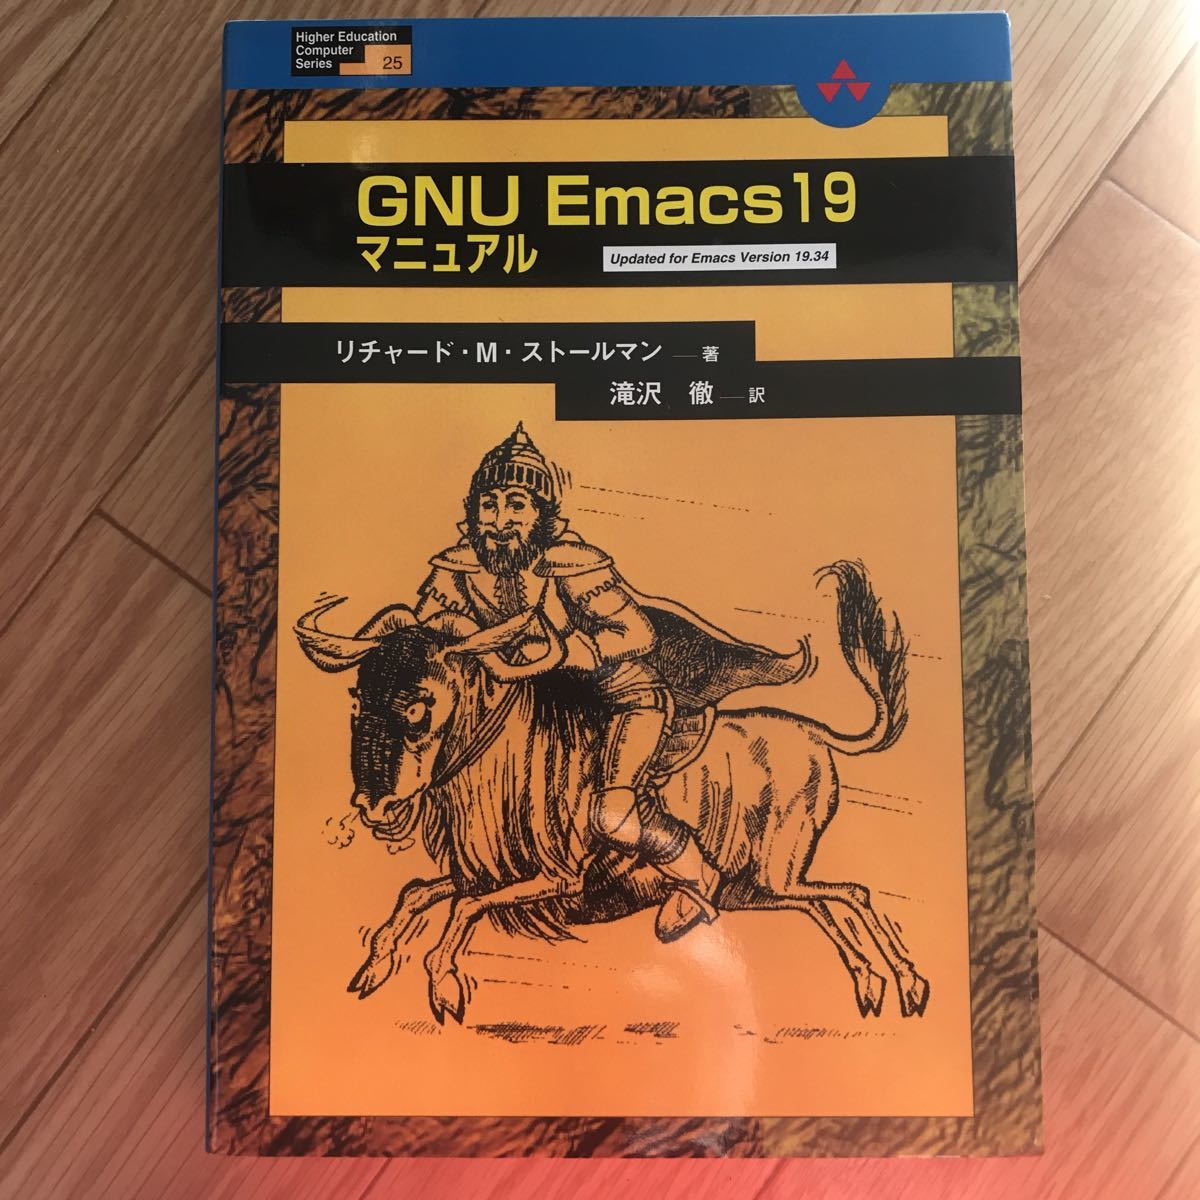 GNU Emacs 19 manual первая версия no. 1. Richard *M* палантин man работа ... перевод эта 2